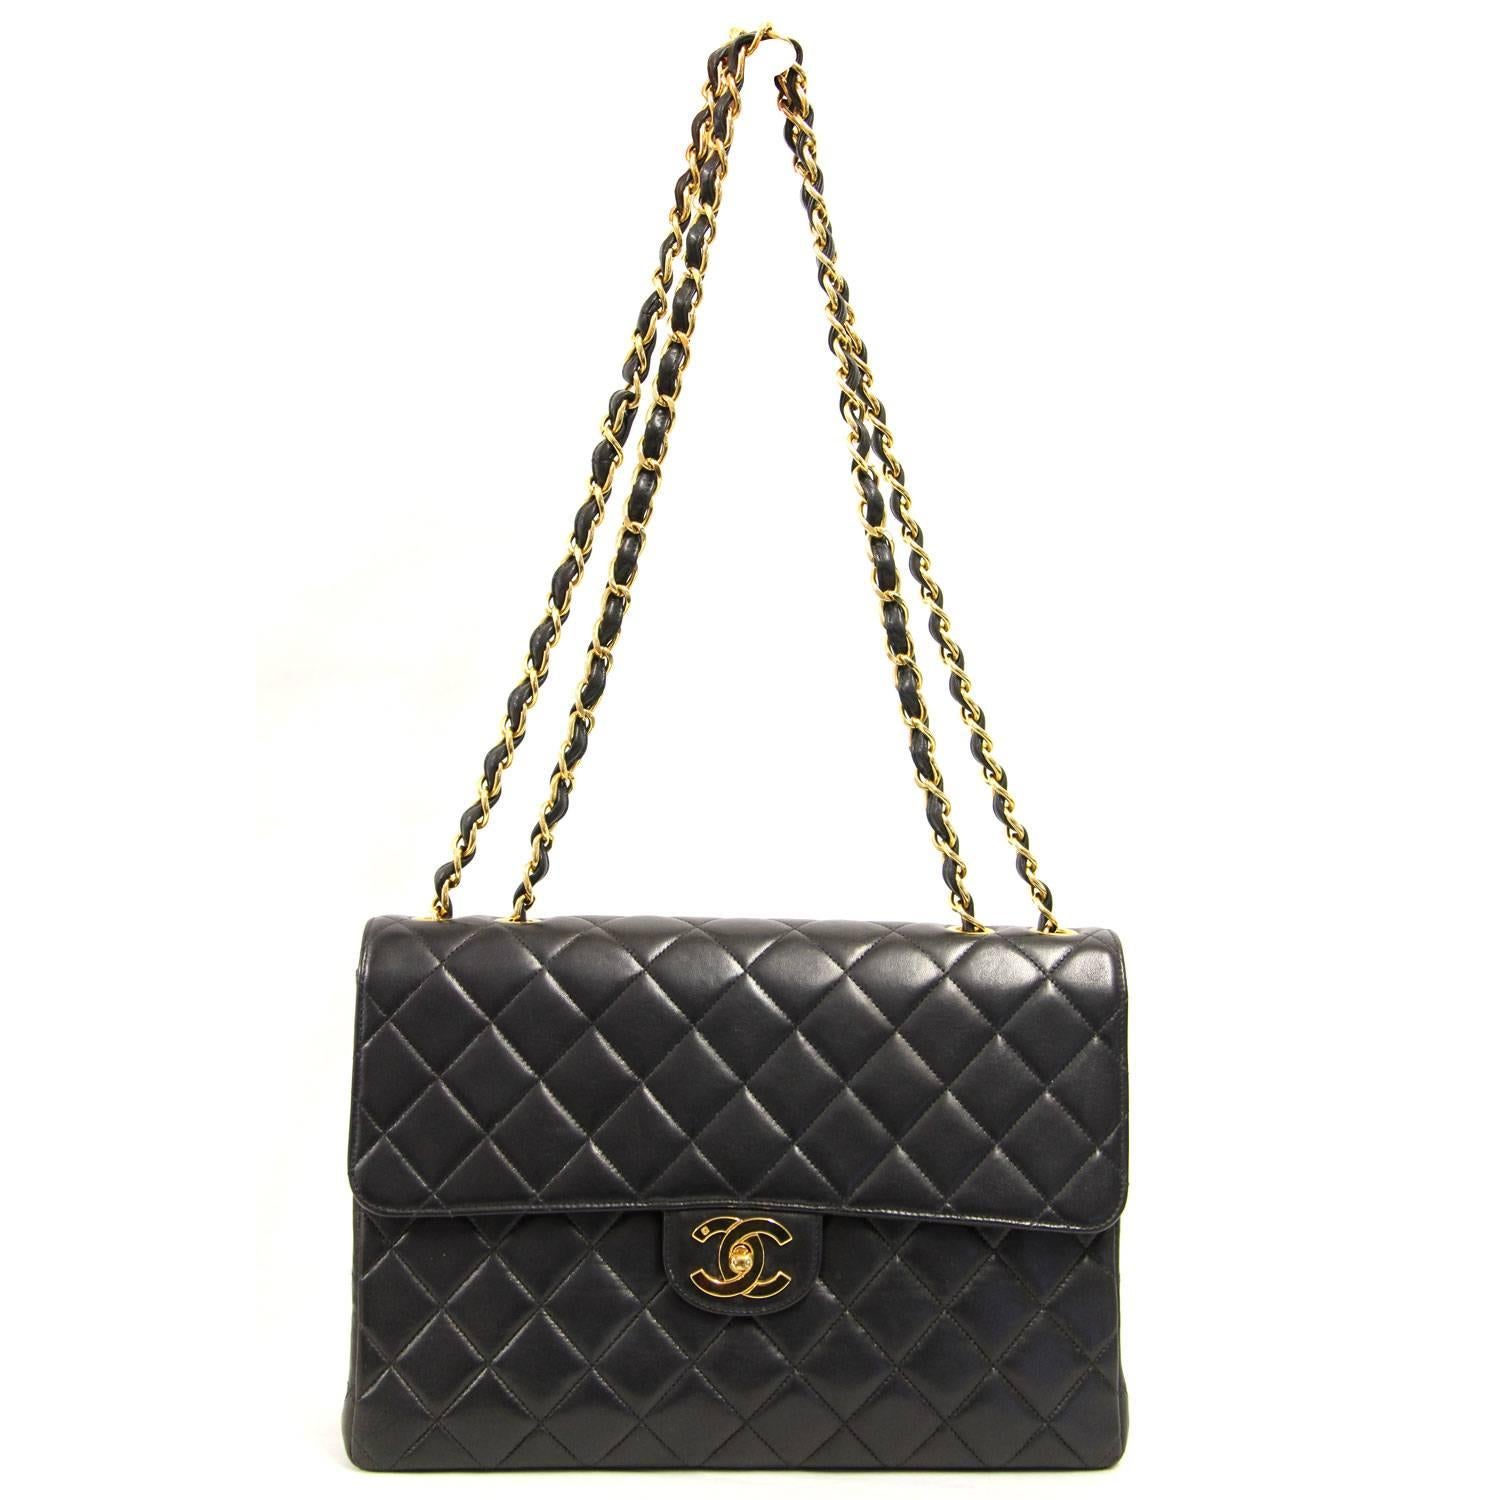 1990s Chanel Black Lamb Leather Jumbo Bag